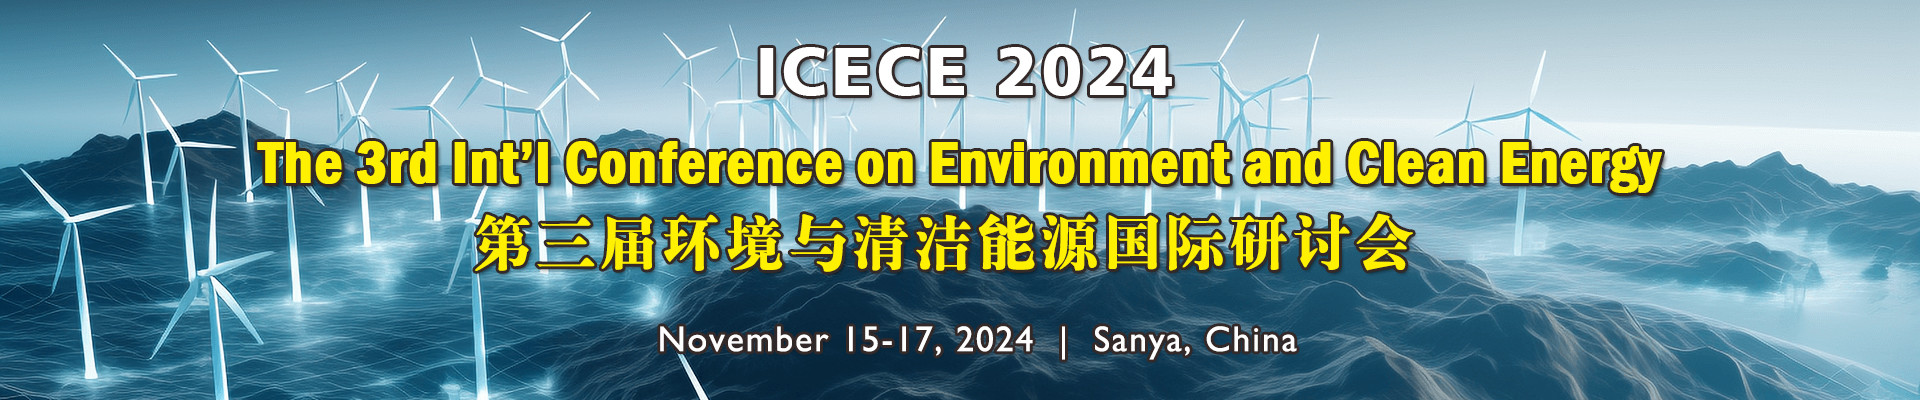 第三届环境与清洁能源国际研讨会 (ICECE 2024) 